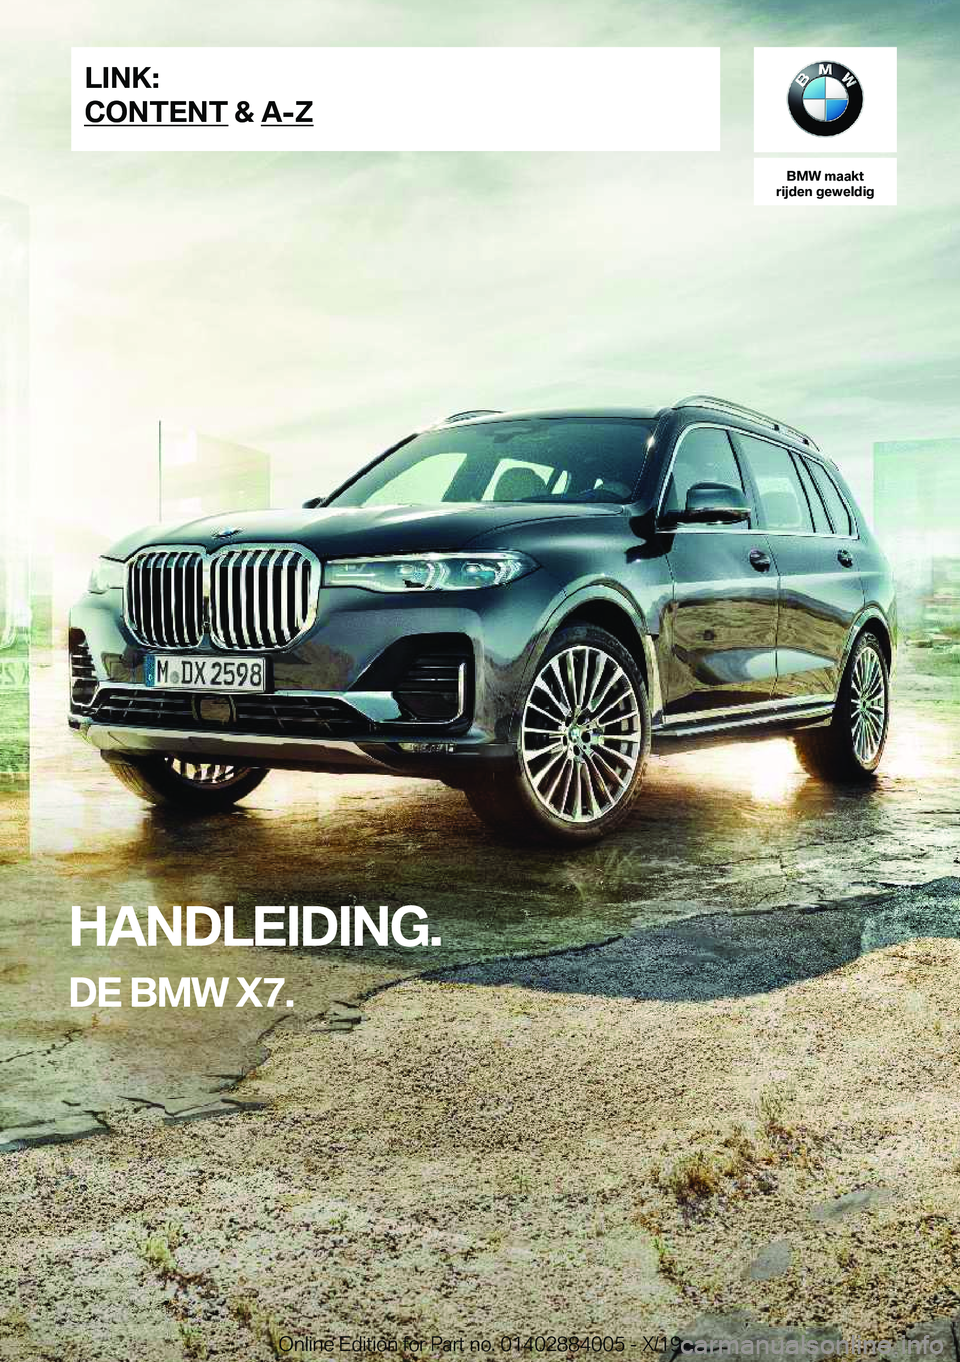 BMW X7 2020  Instructieboekjes (in Dutch) �B�M�W��m�a�a�k�t
�r�i�j�d�e�n��g�e�w�e�l�d�i�g
�H�A�N�D�L�E�I�D�I�N�G�.
�D�E��B�M�W��X�7�.�L�I�N�K�:
�C�O�N�T�E�N�T��&��A�-�Z�O�n�l�i�n�e��E�d�i�t�i�o�n��f�o�r��P�a�r�t��n�o�.��0�1�4�0�2�8